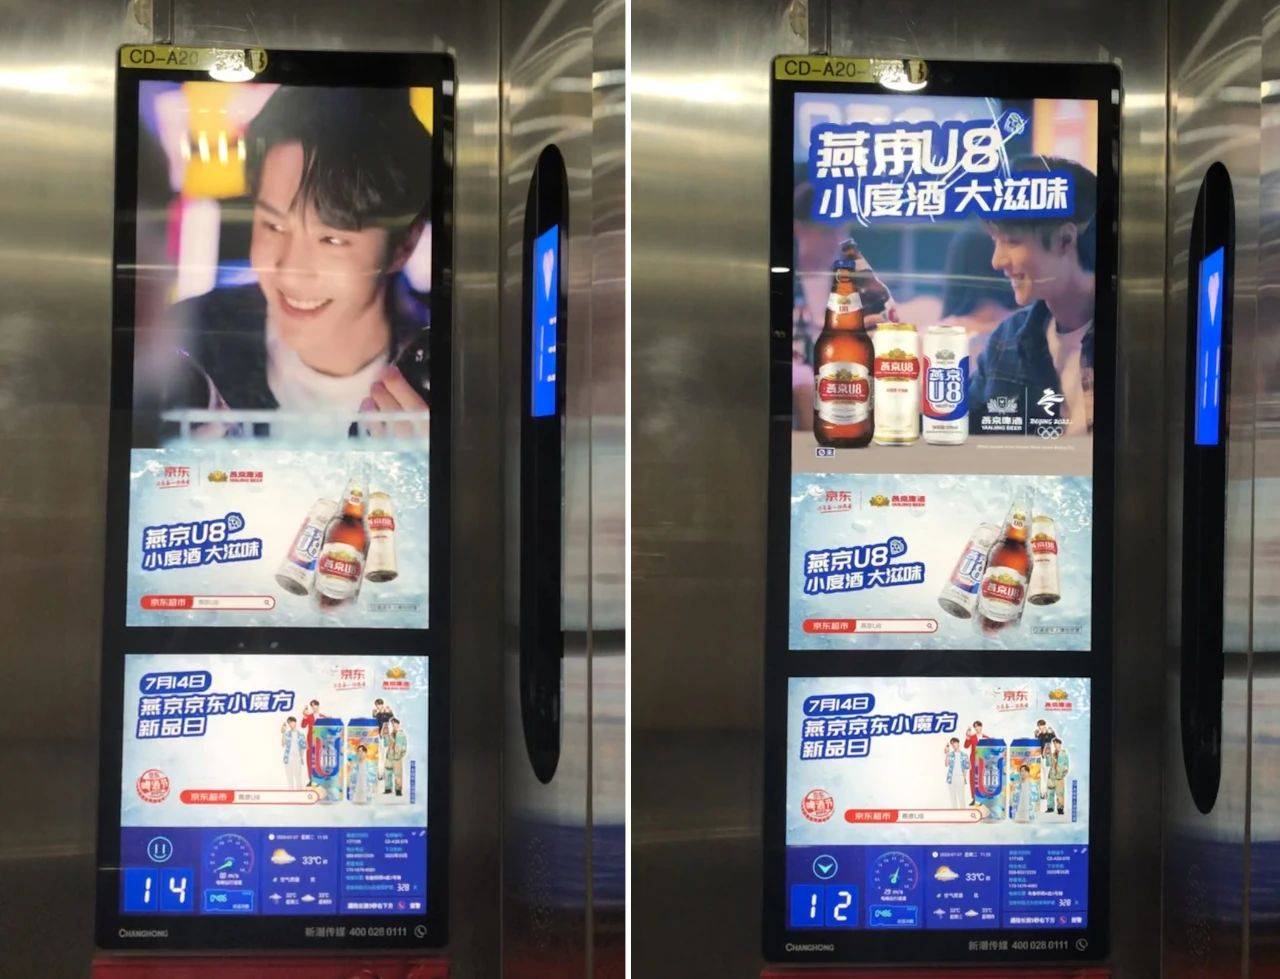 通过投放新潮传媒的电梯广告,出现在全国的电梯